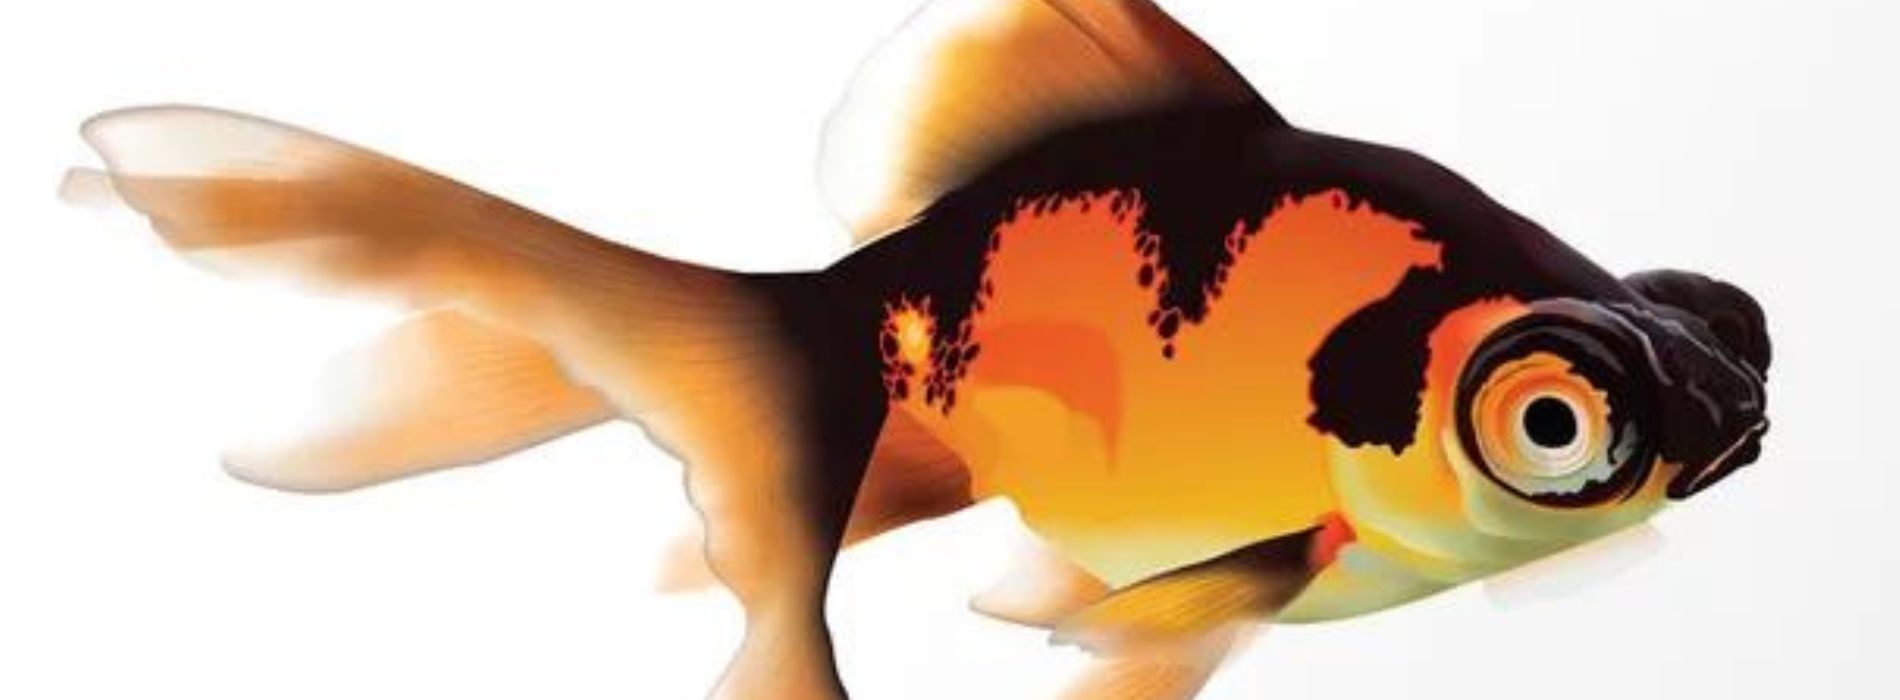 telescope-goldfish-symbolism